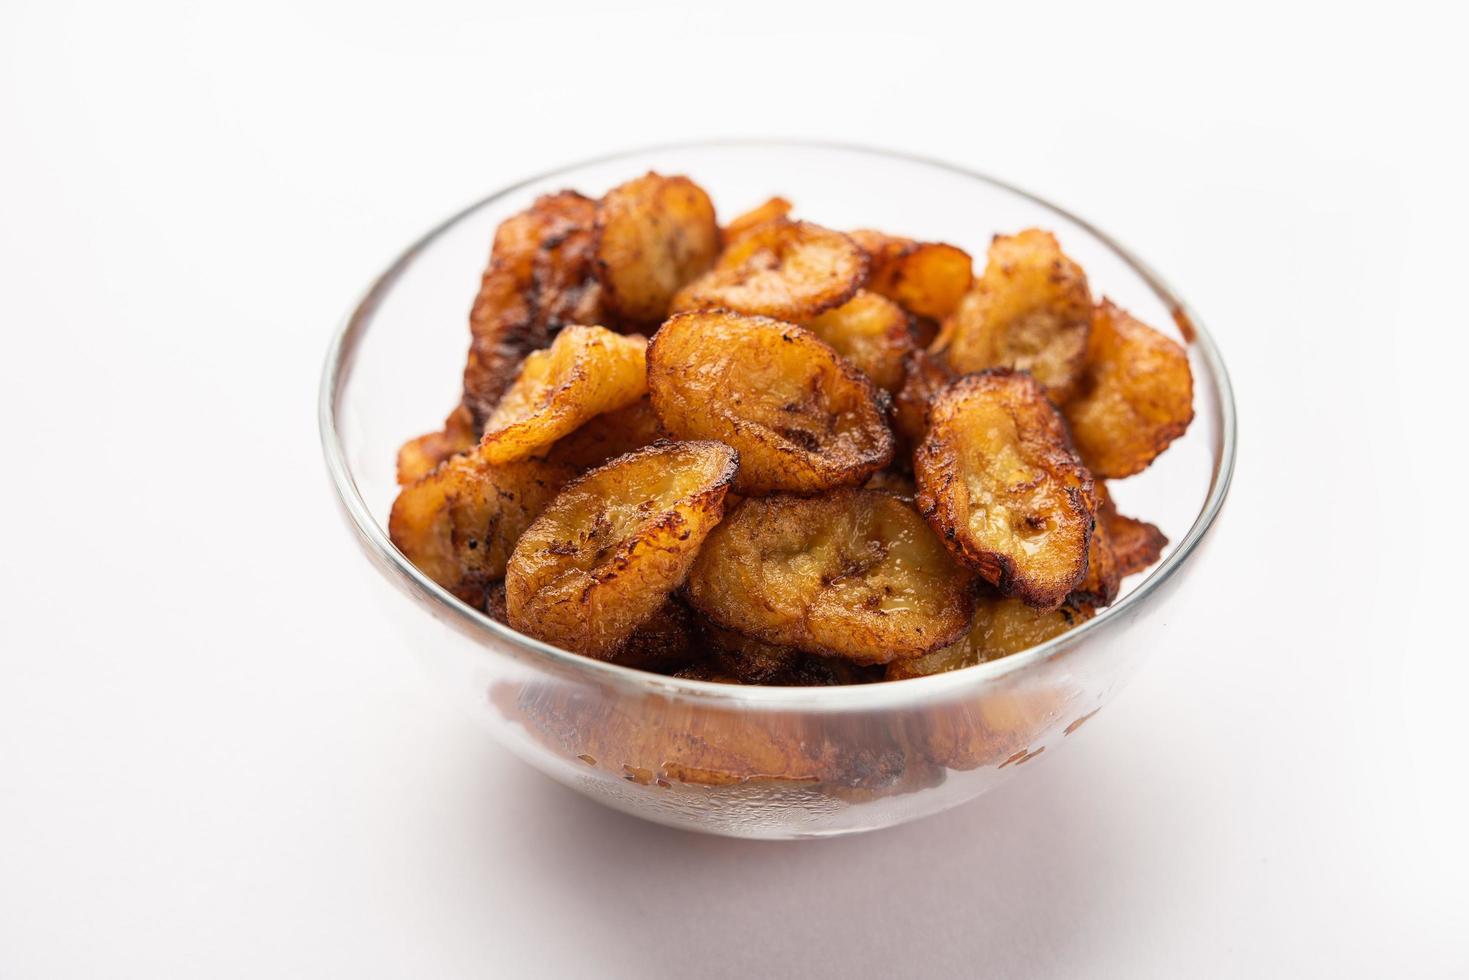 fatias de banana-da-terra maduras fritas ou batatas fritas pake kele em uma tigela foto